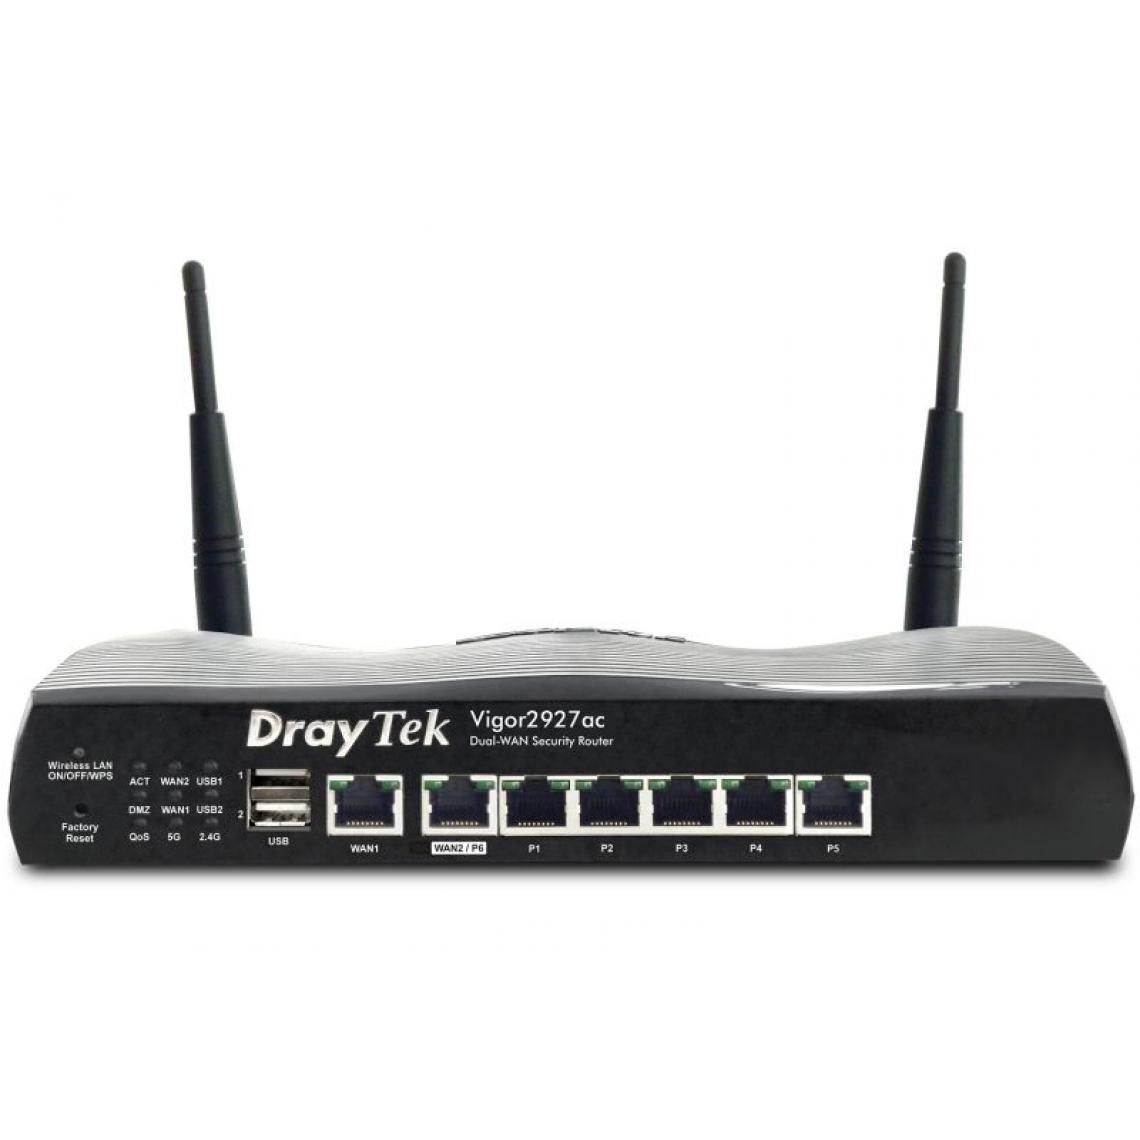 Inconnu - Draytek Vigor2927ac routeur sans fil Gigabit Ethernet Bi-bande (2,4 GHz / 5 GHz) Noir - Modem / Routeur / Points d'accès